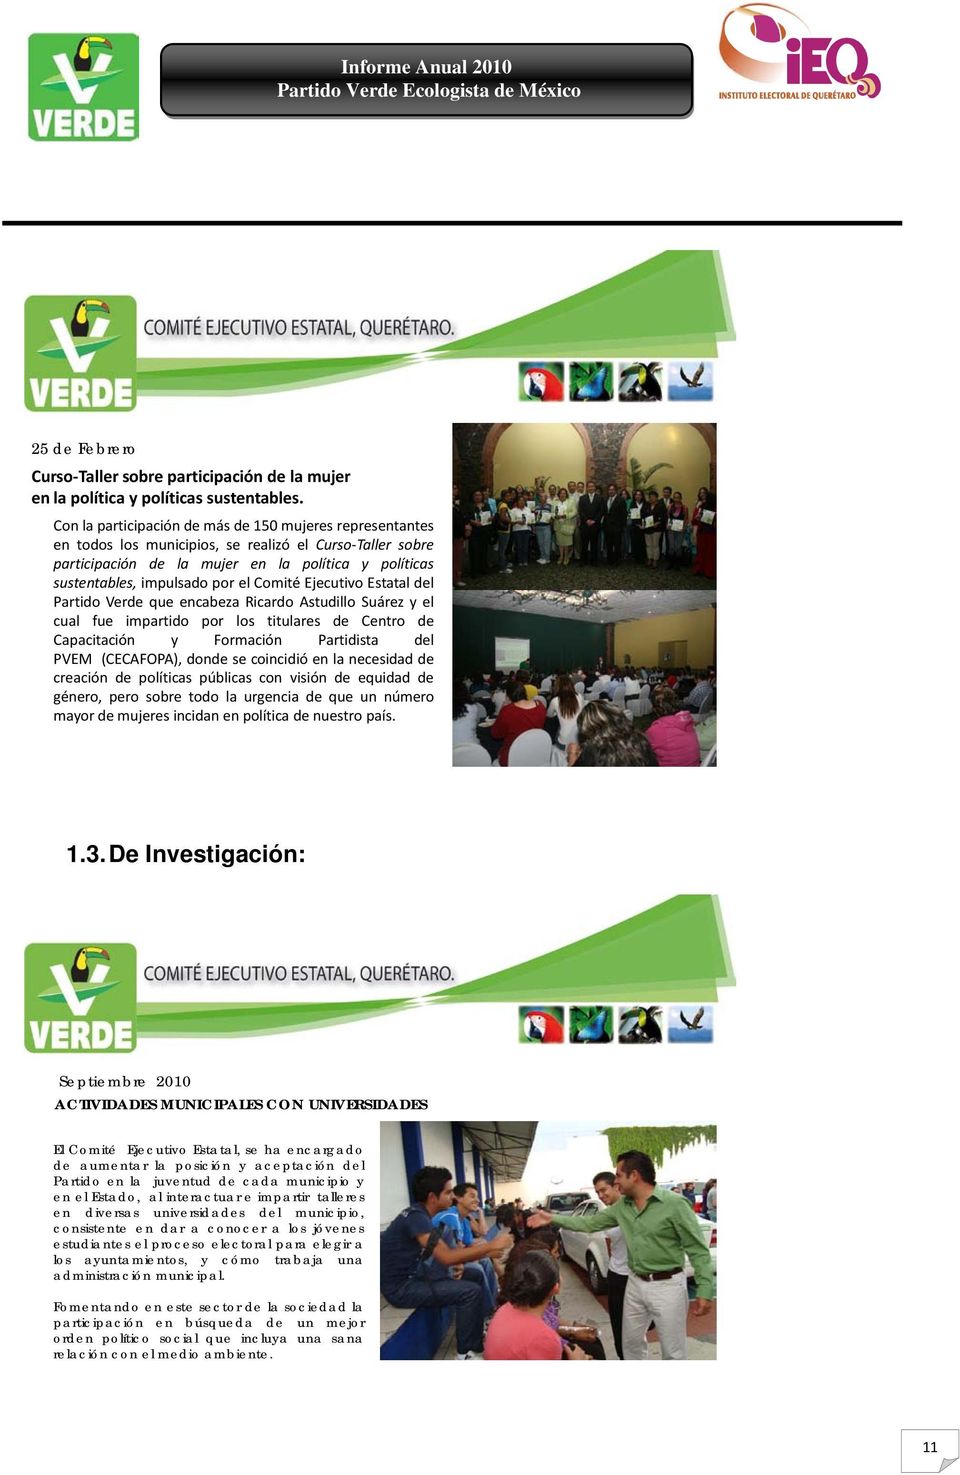 Comité Ejecutivo Estatal del Partido Verde que encabeza Ricardo Astudillo Suárez y el cual fue impartido por los titulares de Centro de Capacitación y Formación Partidista del PVEM (CECAFOPA), donde